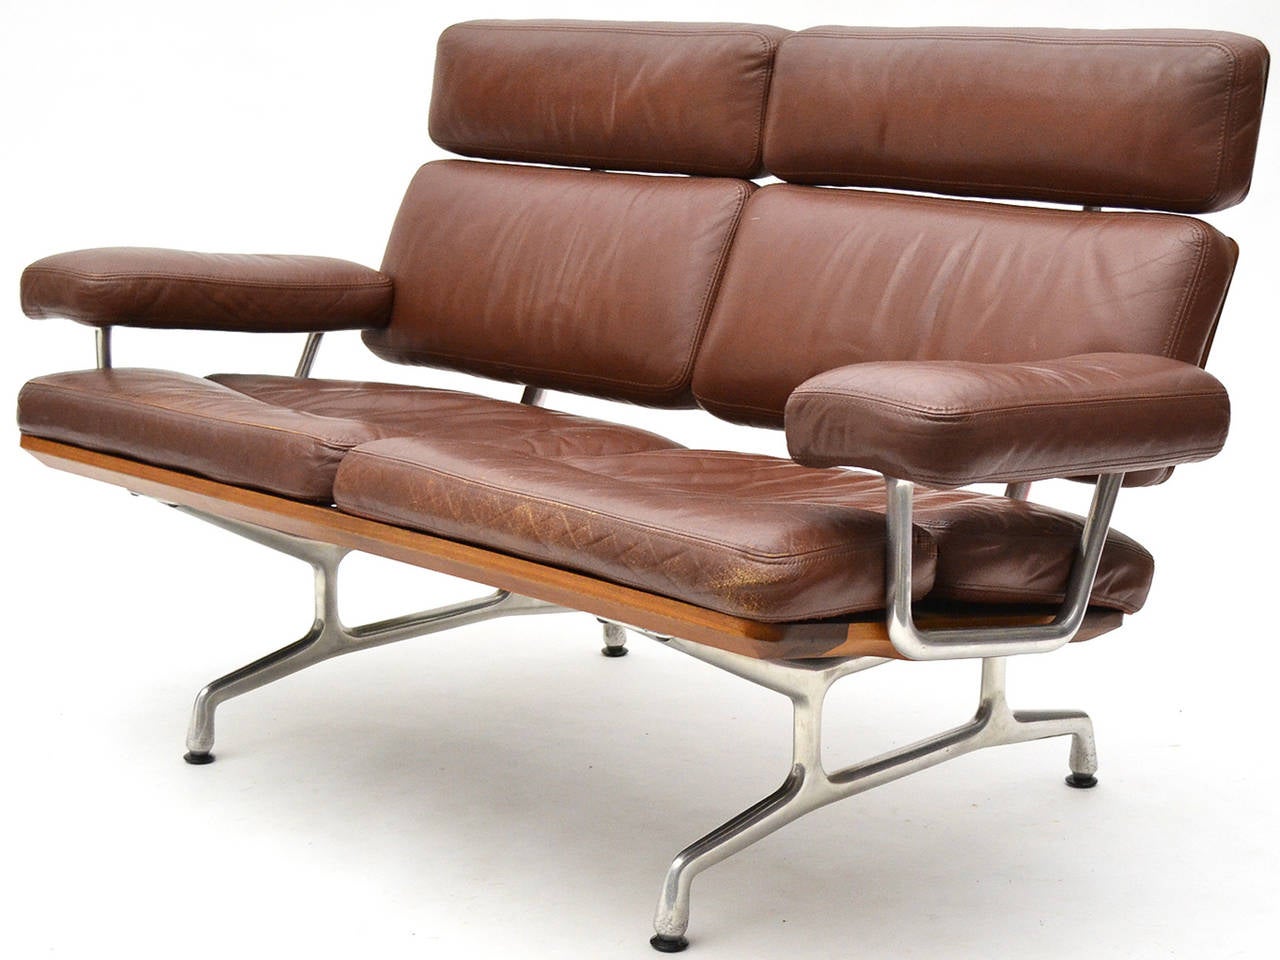 Das Teakholzsofa von Charles und Ray Eames war der letzte Entwurf des Ehepaars. Das ursprünglich in den 1970er Jahren entworfene Sofa weist gemeinsame Merkmale mit mehreren anderen Eames-Entwürfen auf:: darunter das Sofa compact:: das spätere Modell